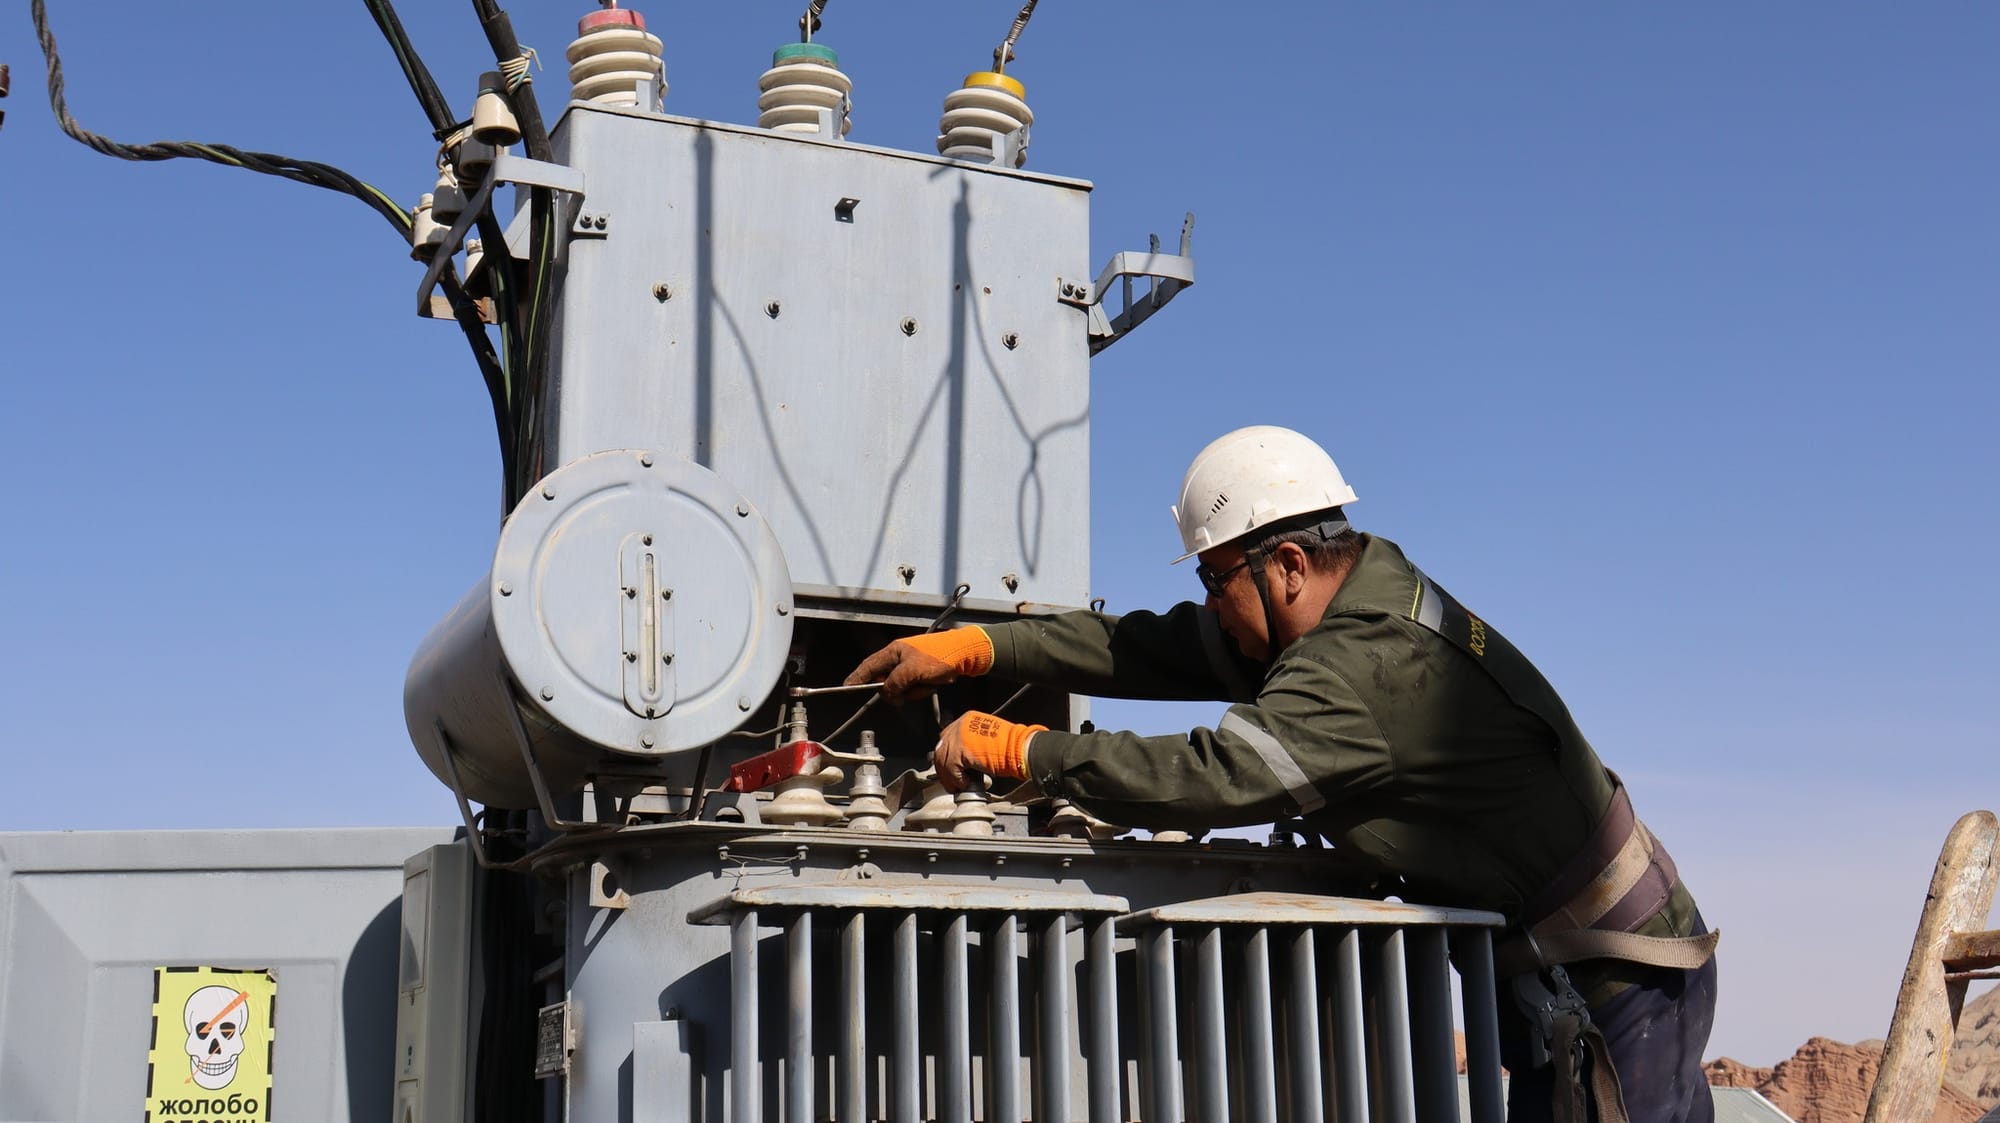 Плановые работы на электросетях: где в Бишкеке не будет электричества 23 мая — список